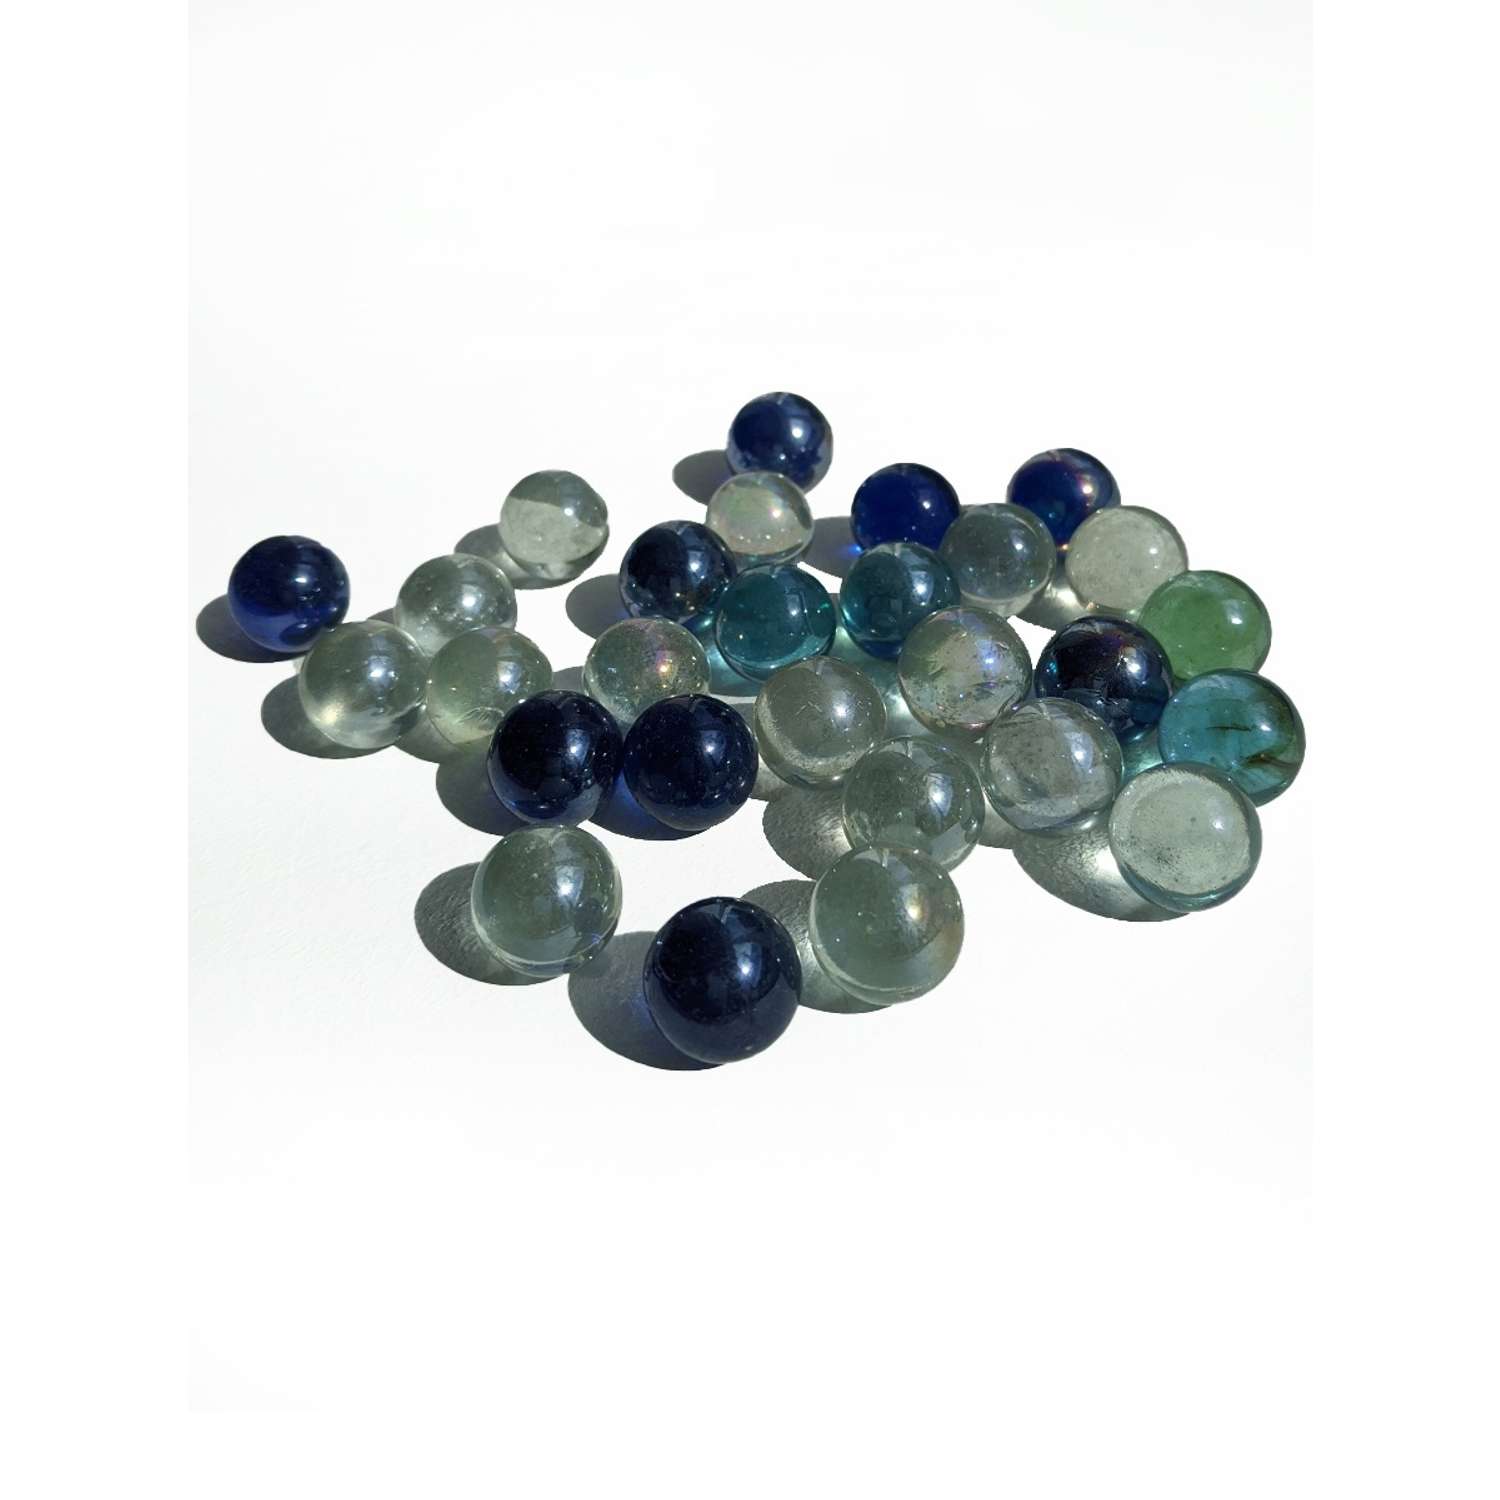 Стеклянные шарики Riota камешки марблс/грунт стеклянный прозрачный голубой синий 16 мм 30 шт - фото 1